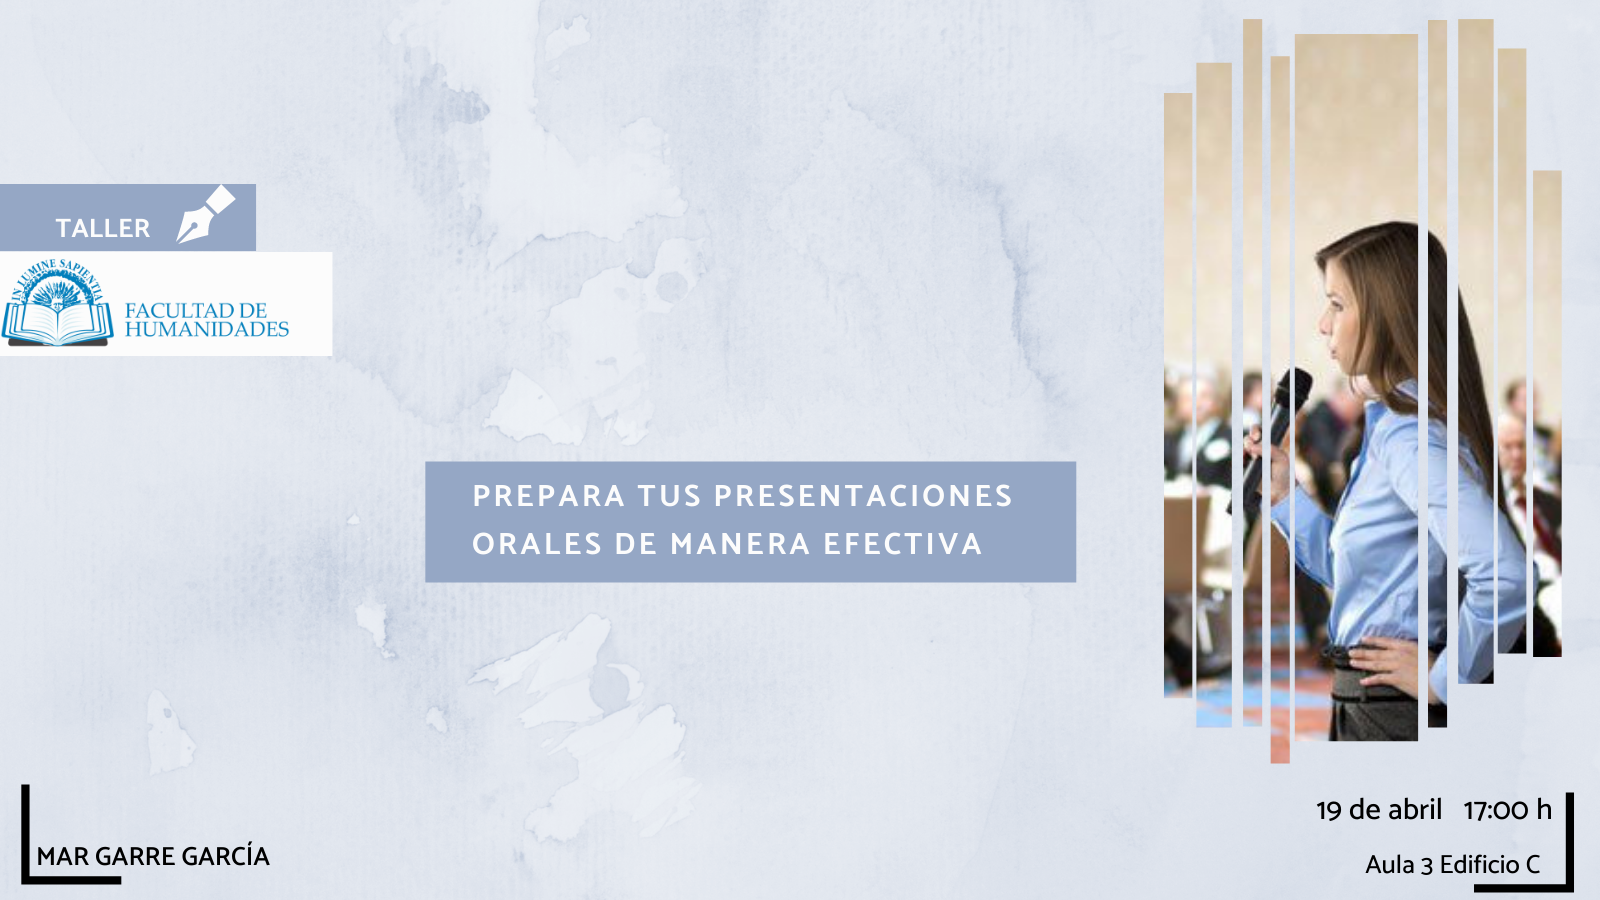 La Facultad de Humanidades y Mar Garre García organizan la actividad titulada «Prepara tus presentaciones orales de manera efectiva».